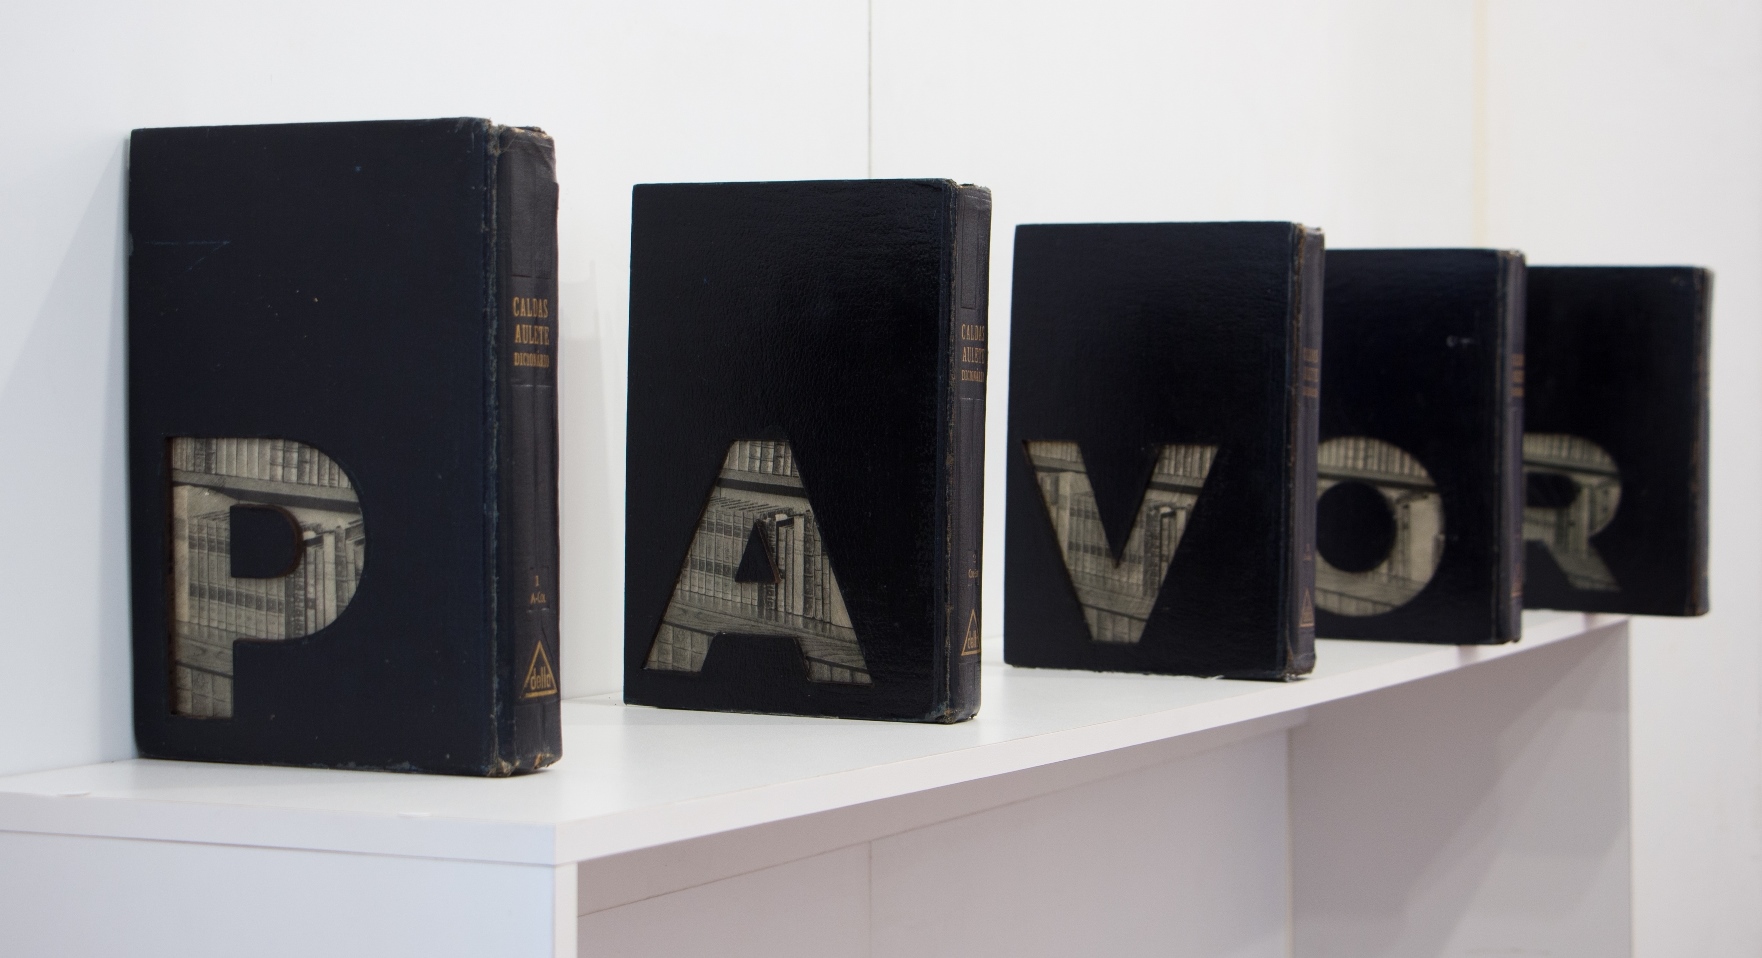 Pavor - Negros, 2019. Instalação, 5 livros colados e recortados com a palavra PAVOR/NEGRO, 30x250x30cm. 